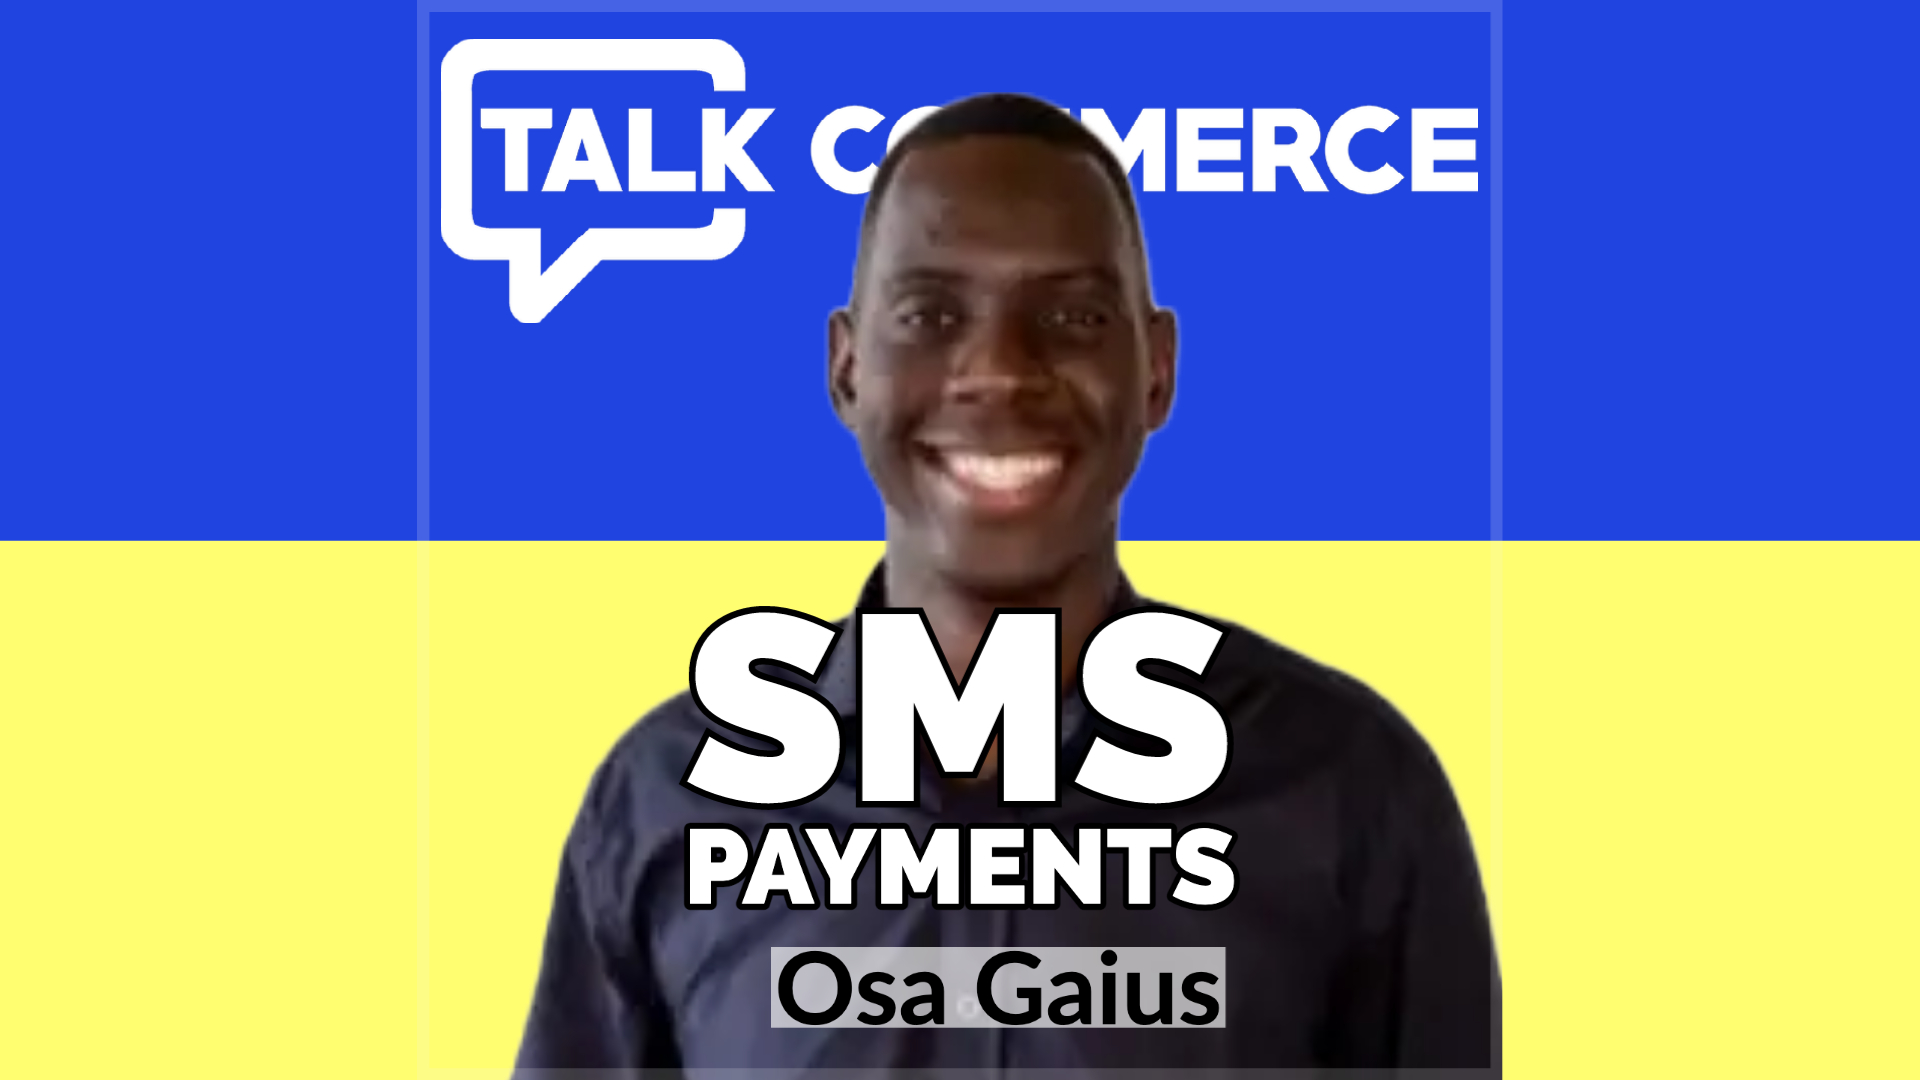 Talk Commerce Osa Gaius